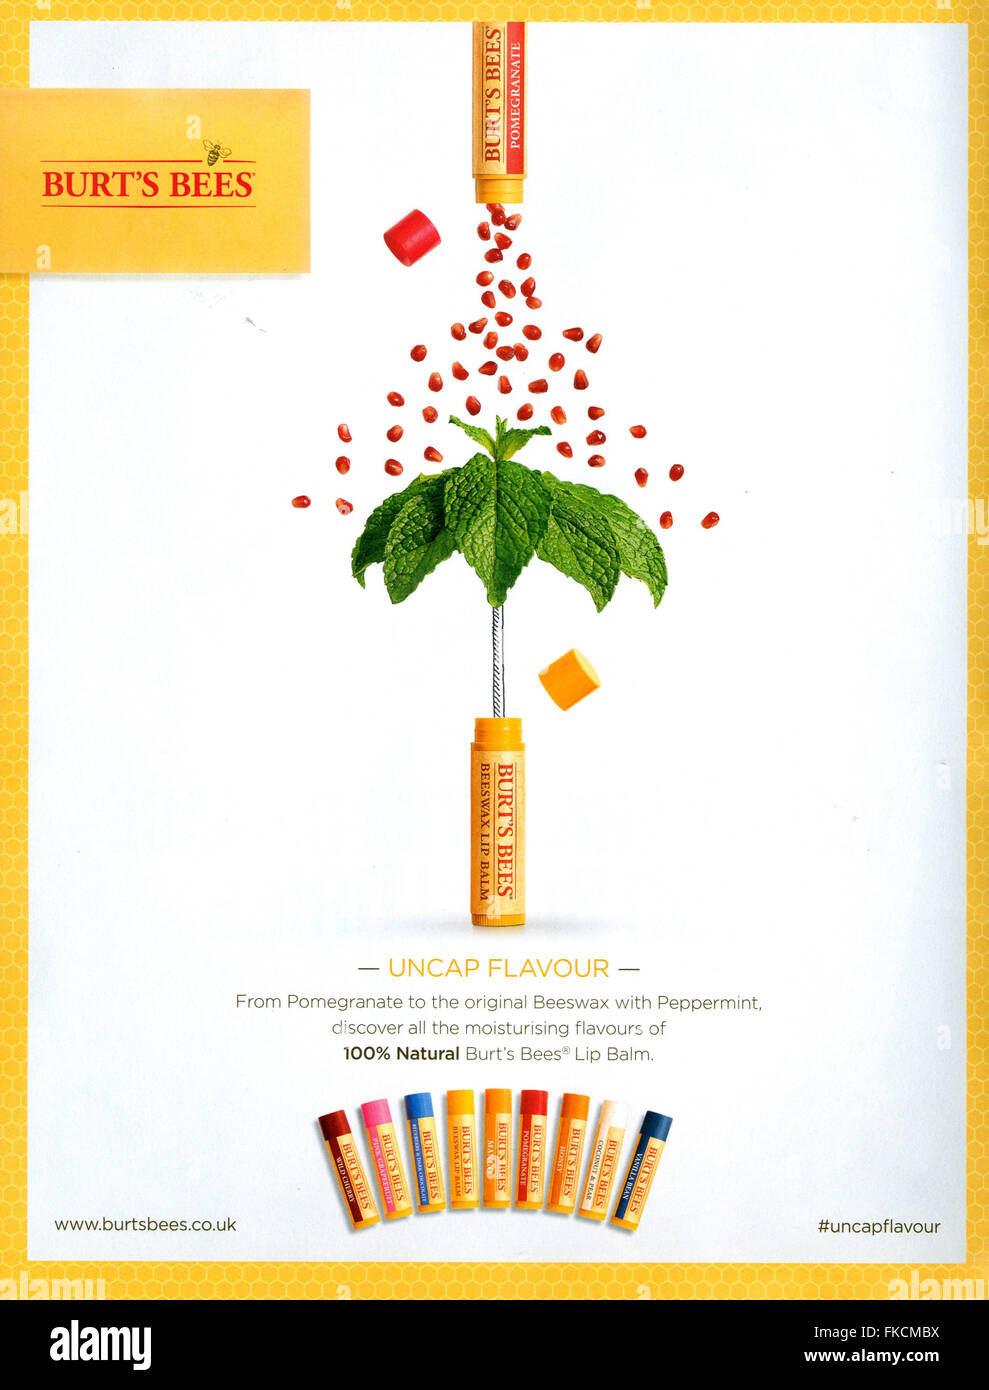 2010S UK Burt's Bees Magazine annuncio pubblicitario Foto Stock